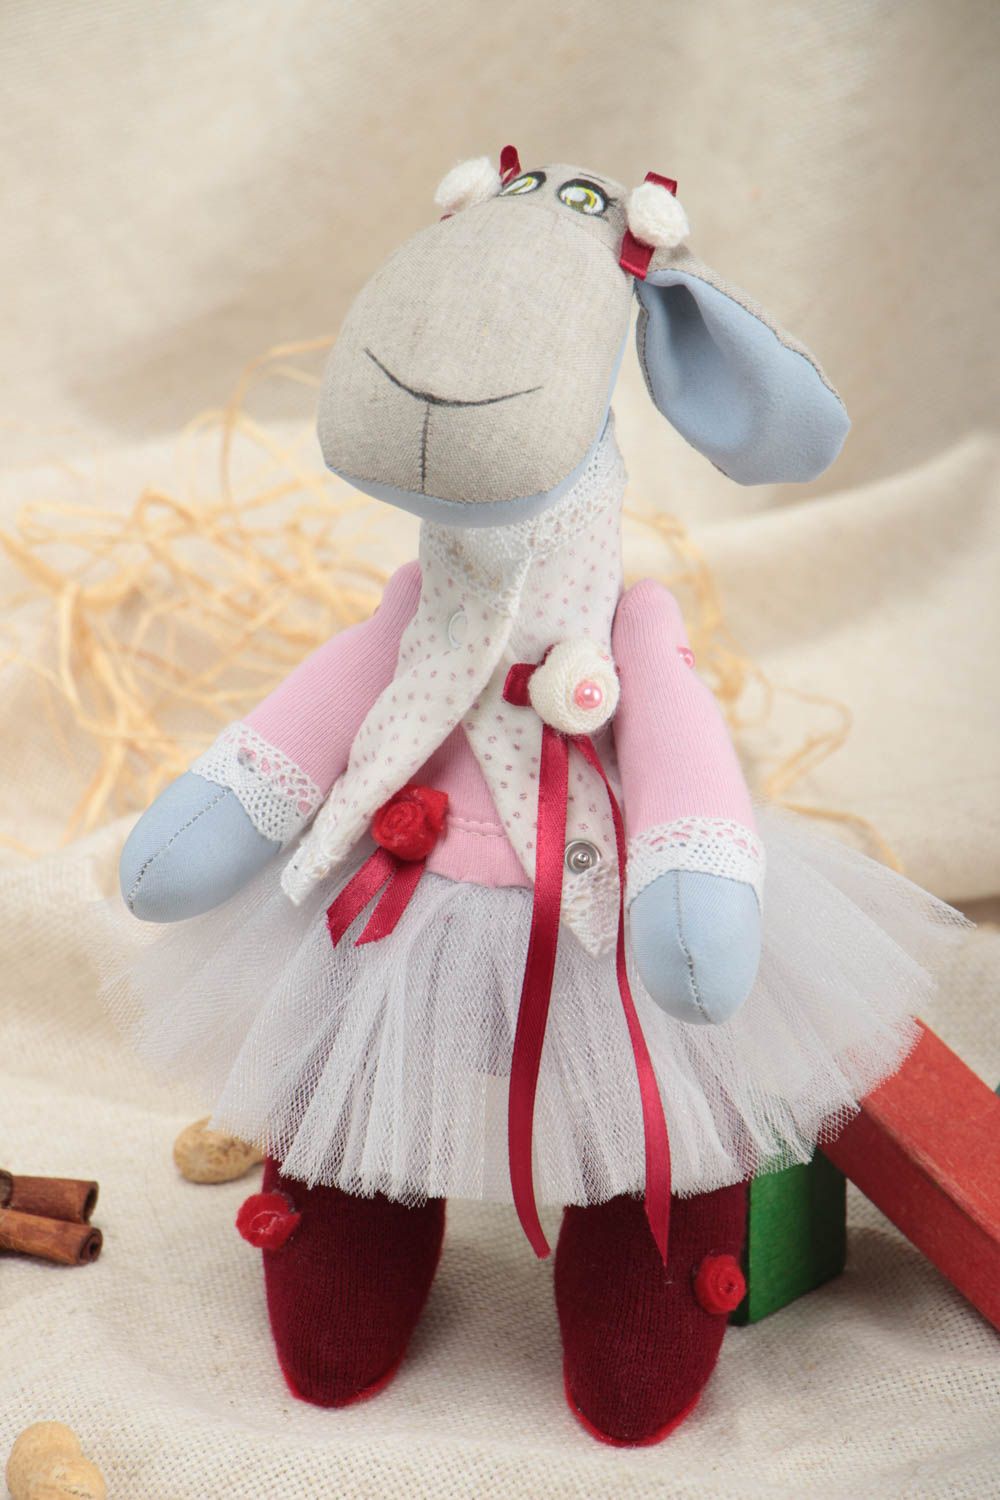 Jouet décoratif en tissu fait main design original peint pour enfant Mouton photo 1